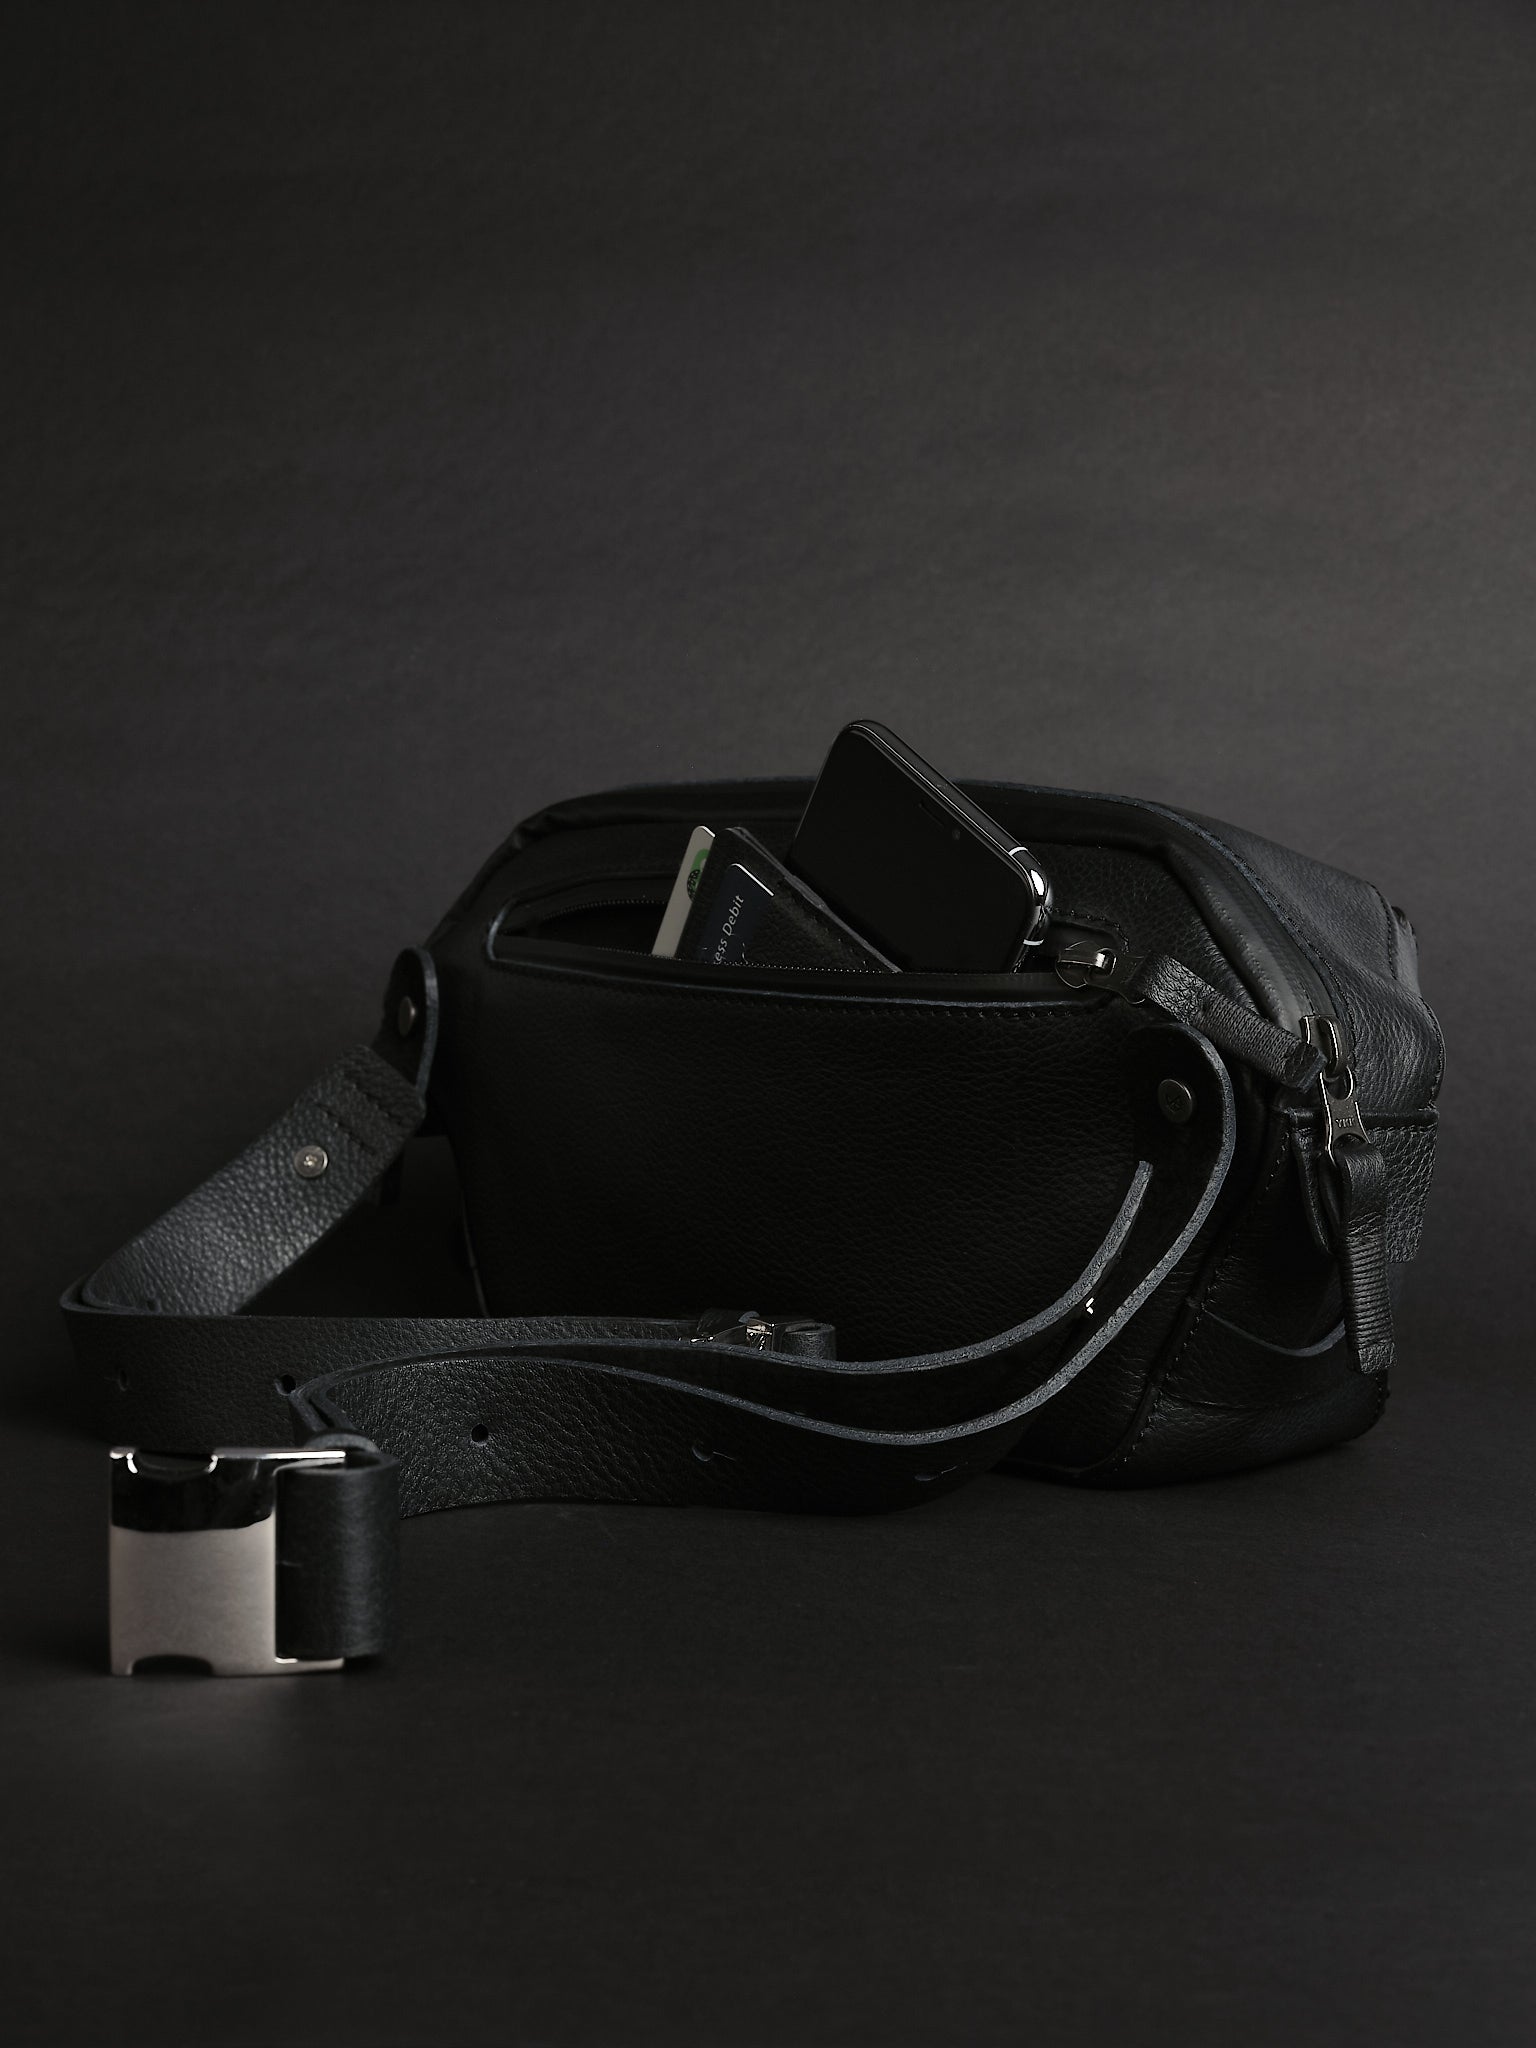 Sling pack with back pocket. Urban Sling Bag Black by Capra Leather